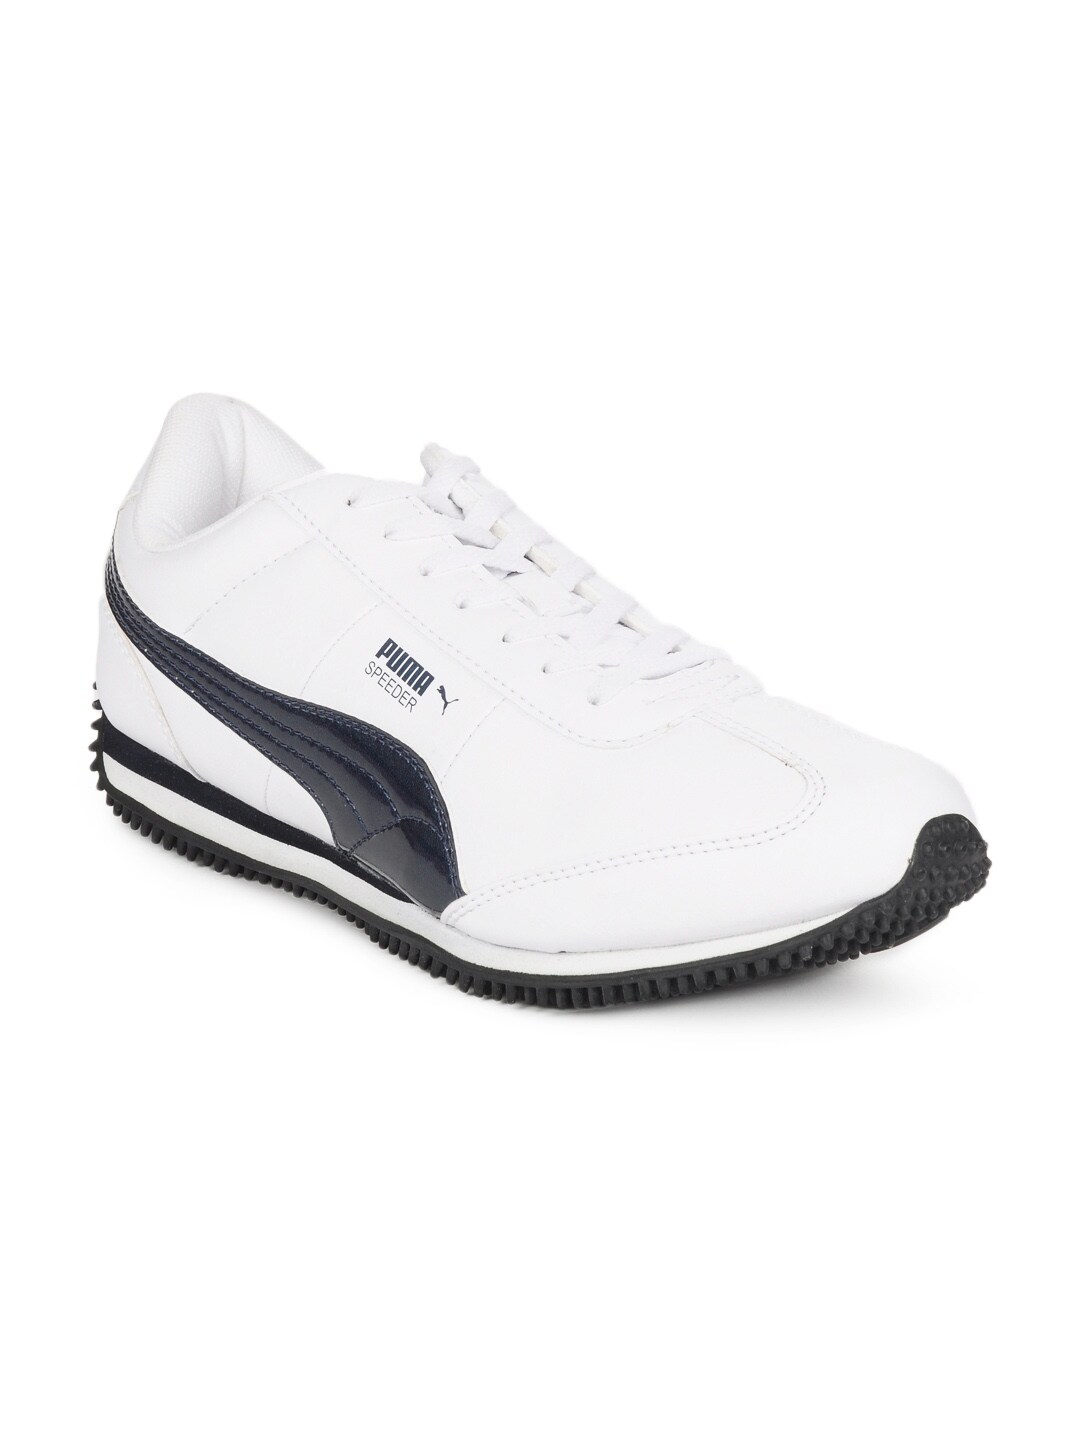 Puma MenSpeeder Ind White Sports Shoes